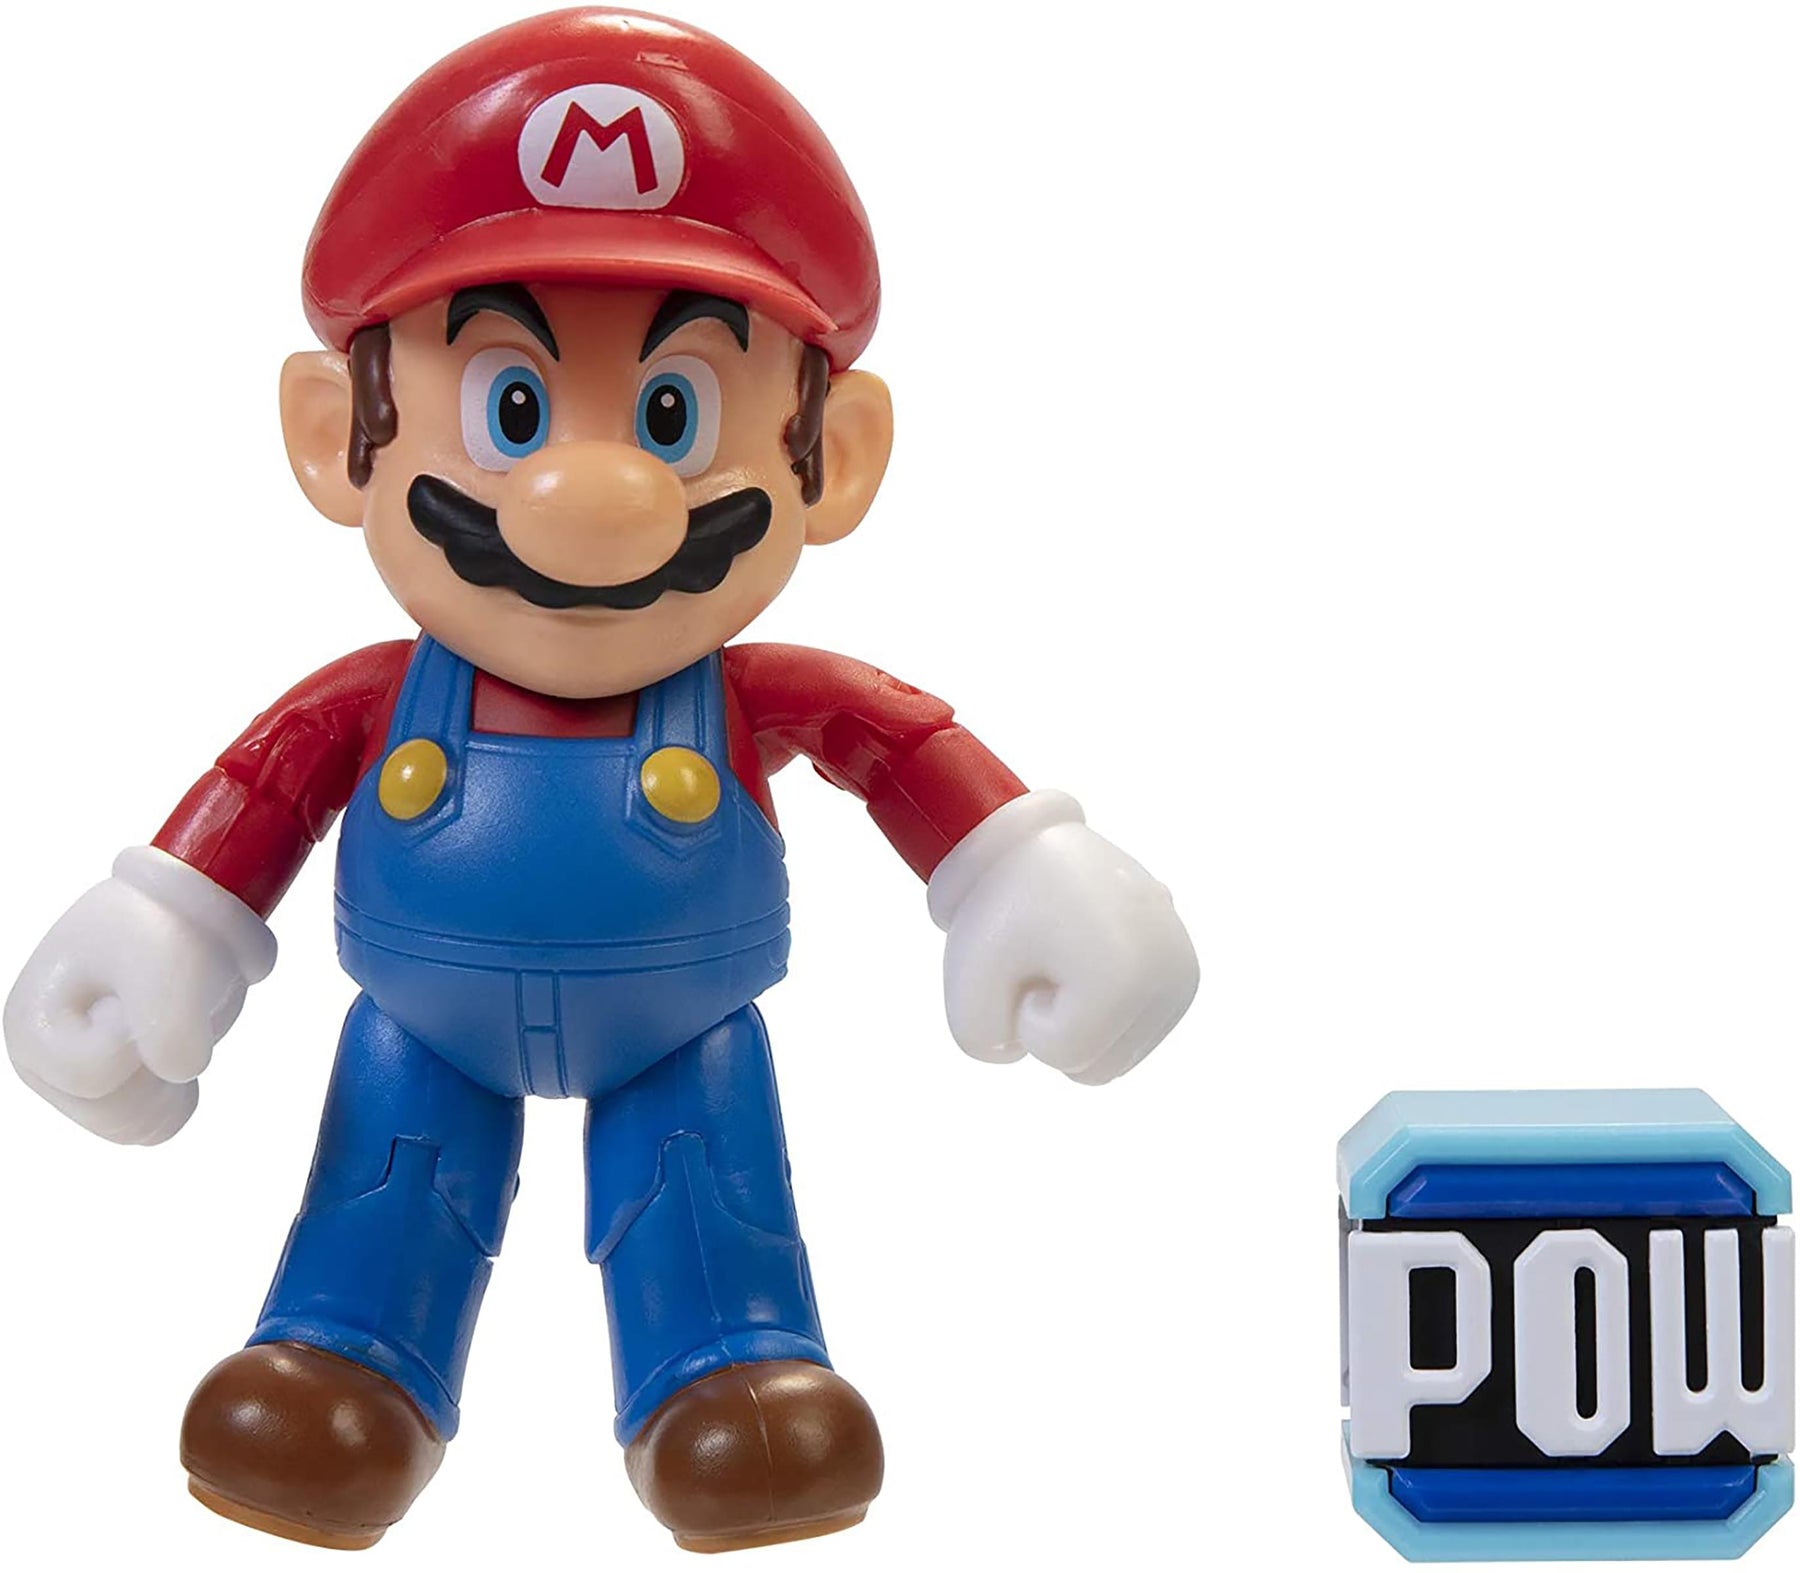 Super Mario World of Nintendo 4 Inch Figure | Mario w/ POW Block